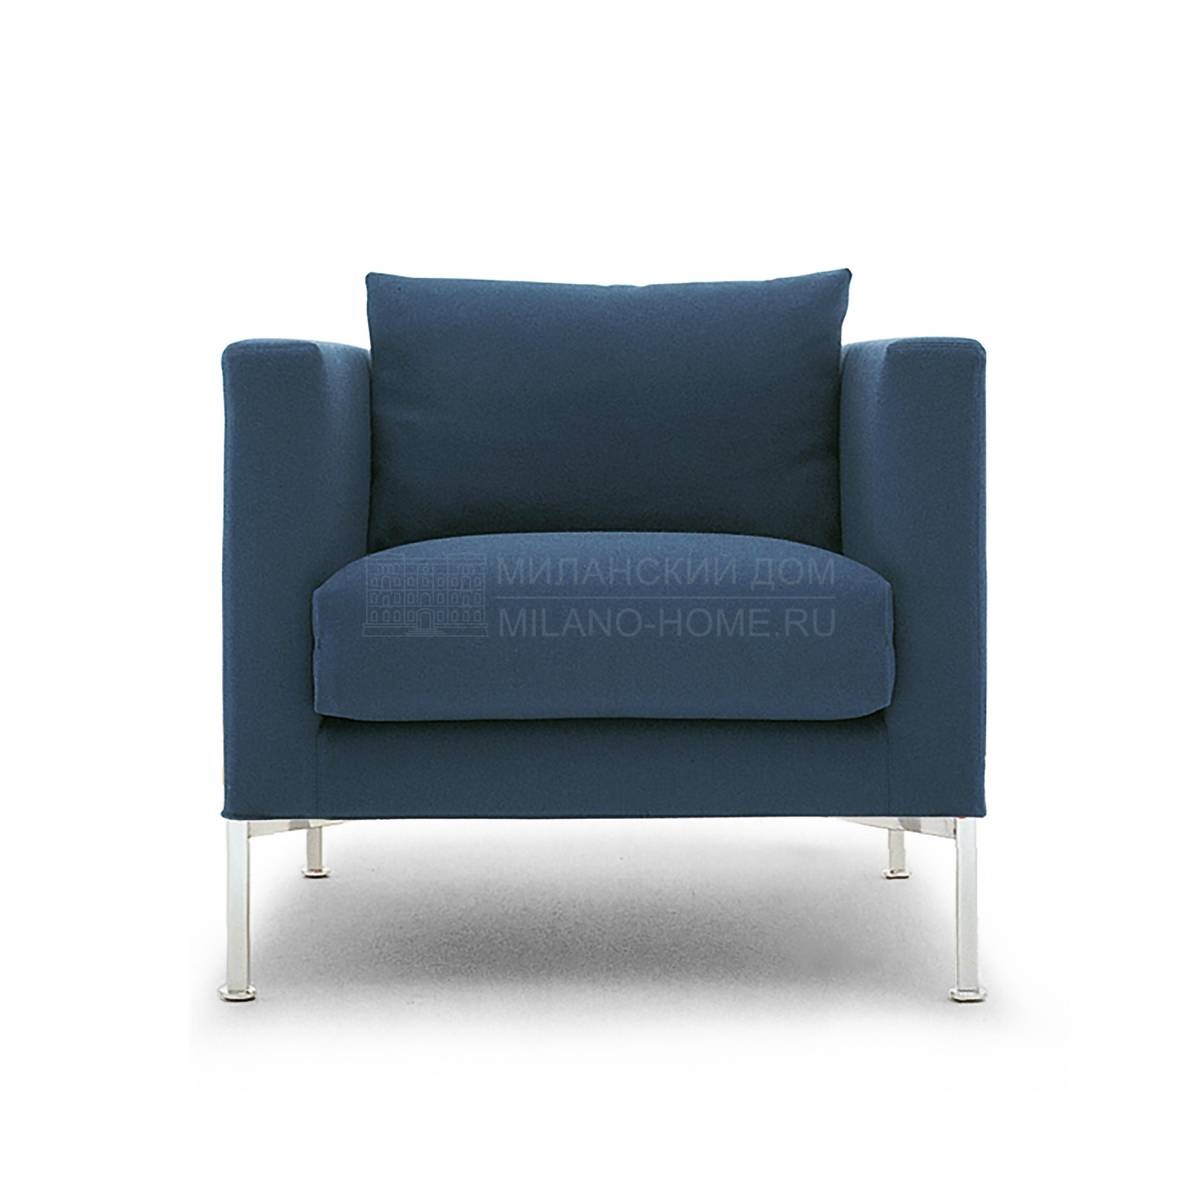 Кресло Box armchair из Италии фабрики LIVING DIVANI